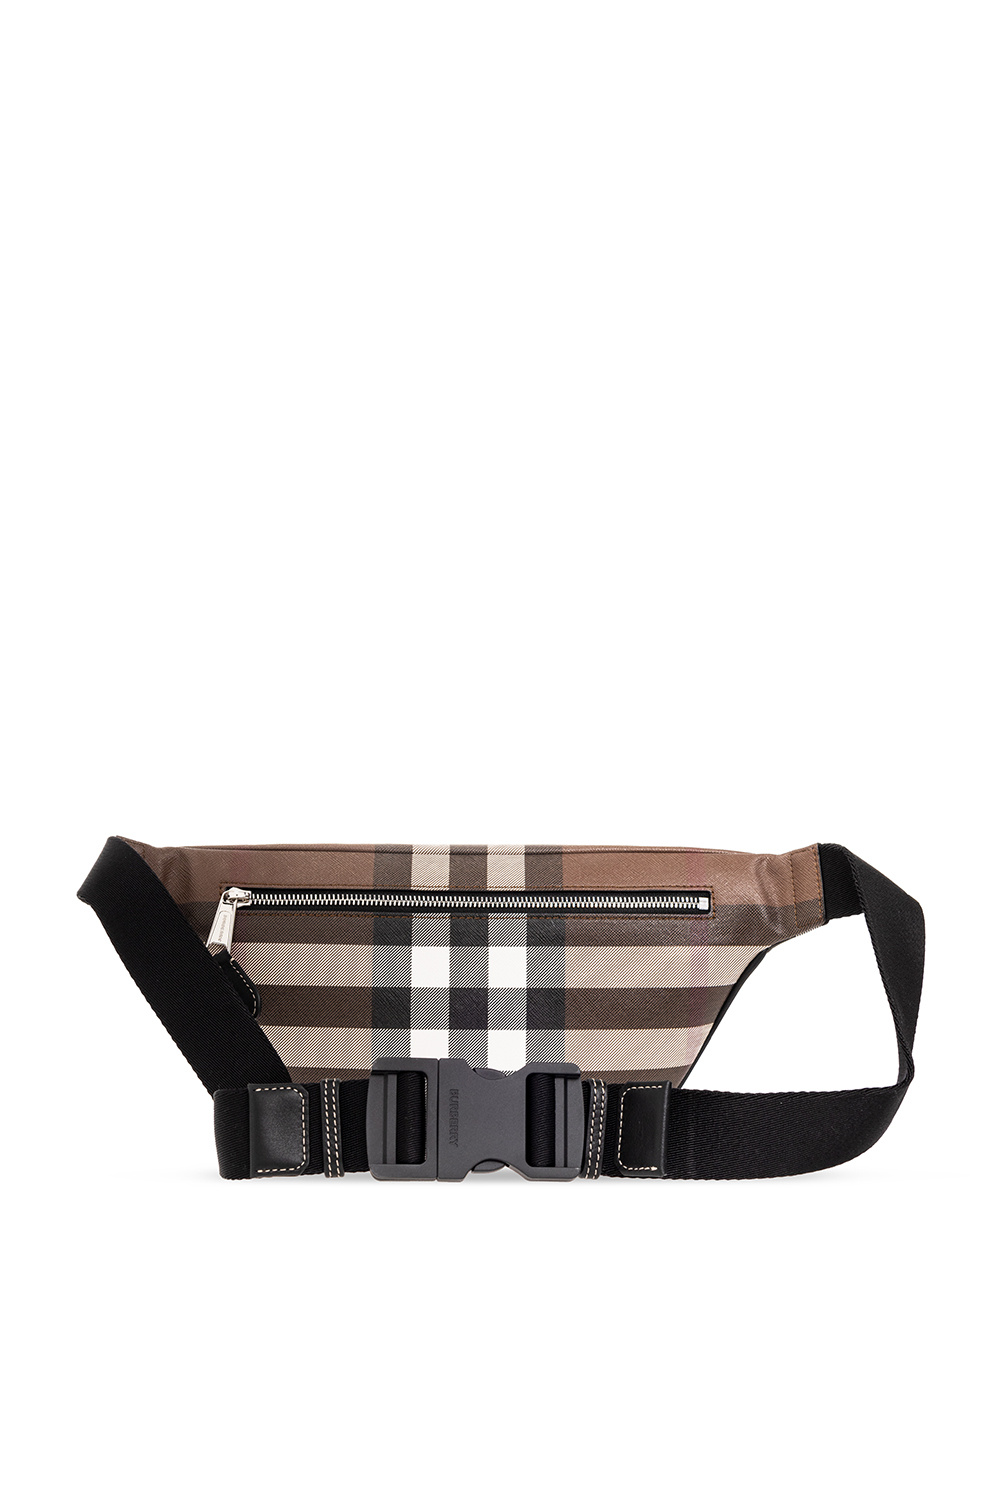 Cason Belt Bag in Dark Birch Brown - Men